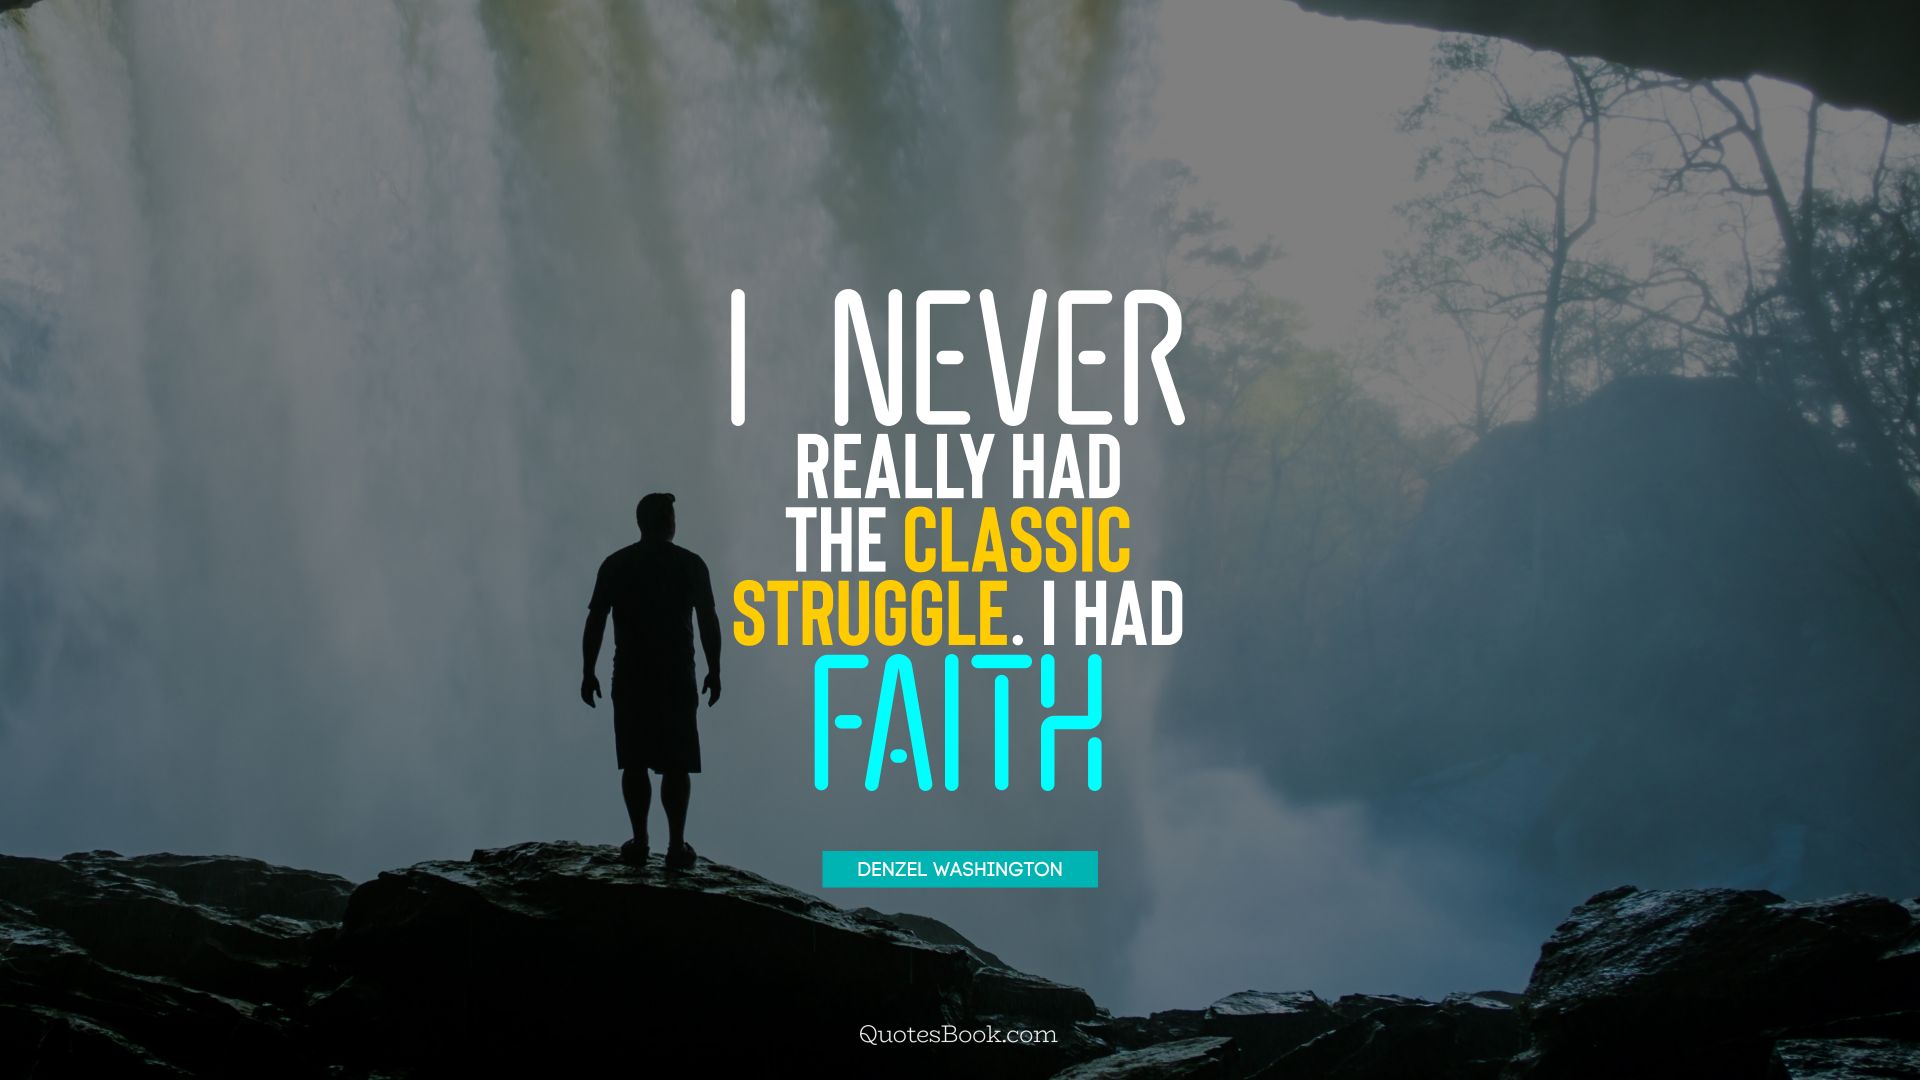 I never really had the classic struggle. I had faith. - Quote by Denzel Washington